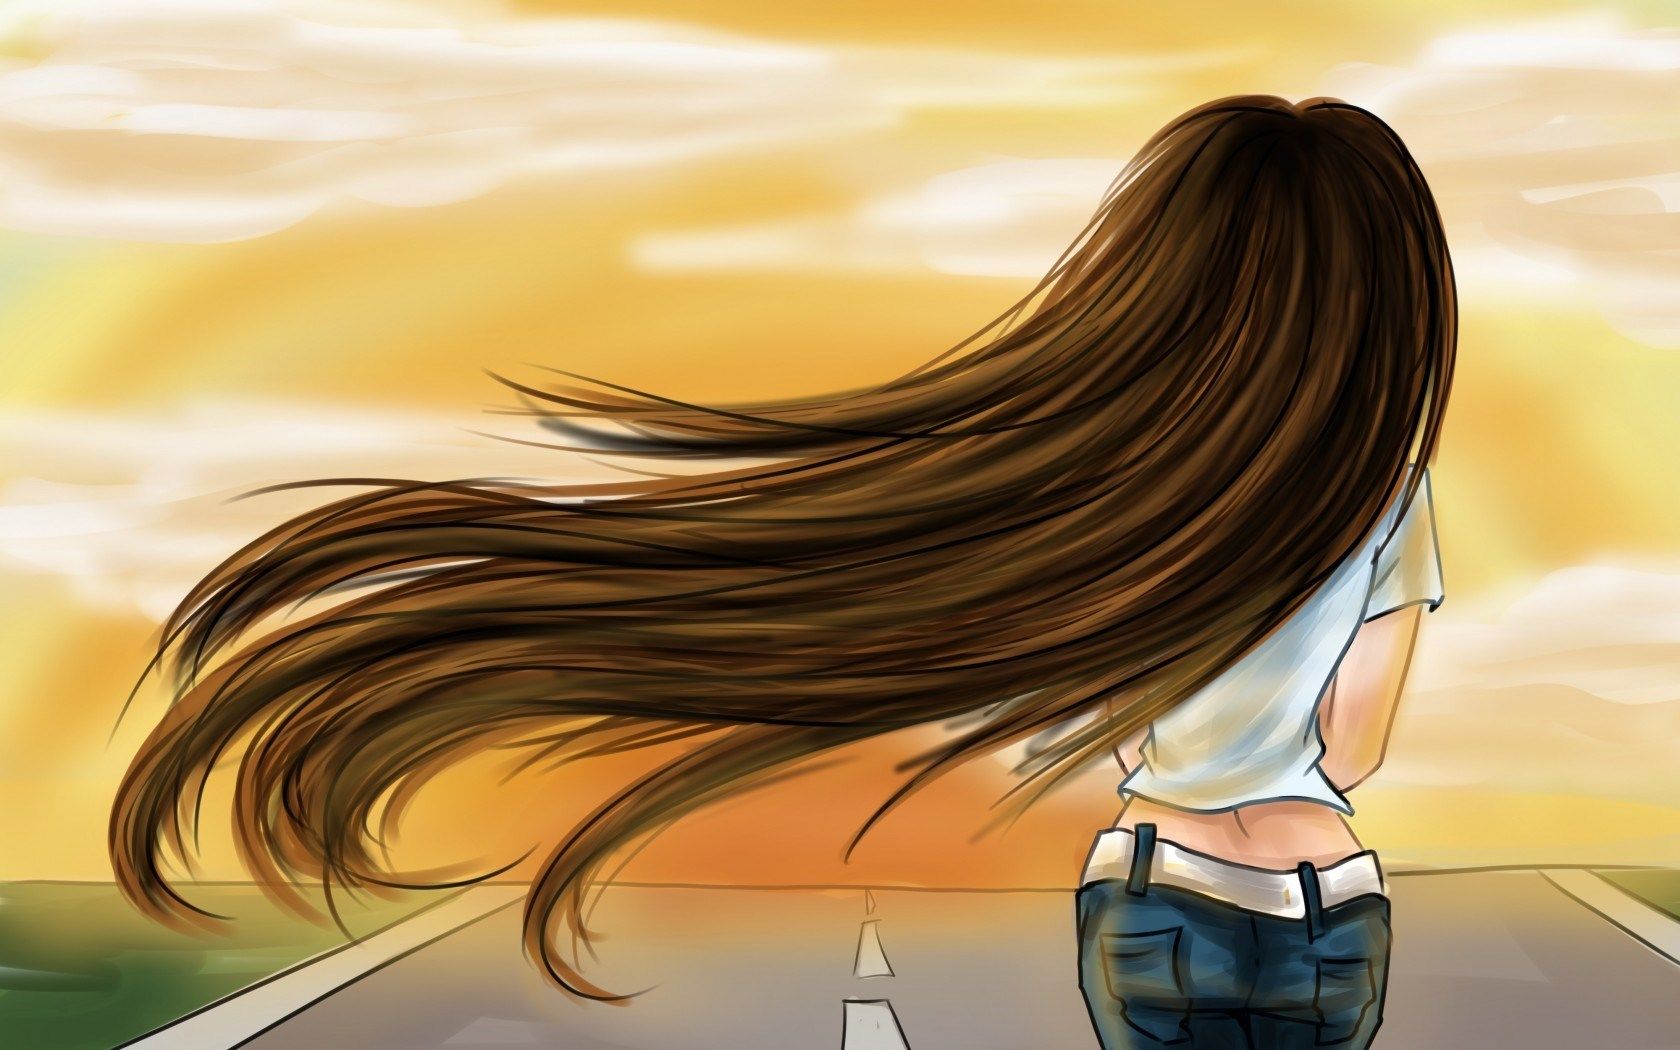 Cartoon Girl With Long Hair